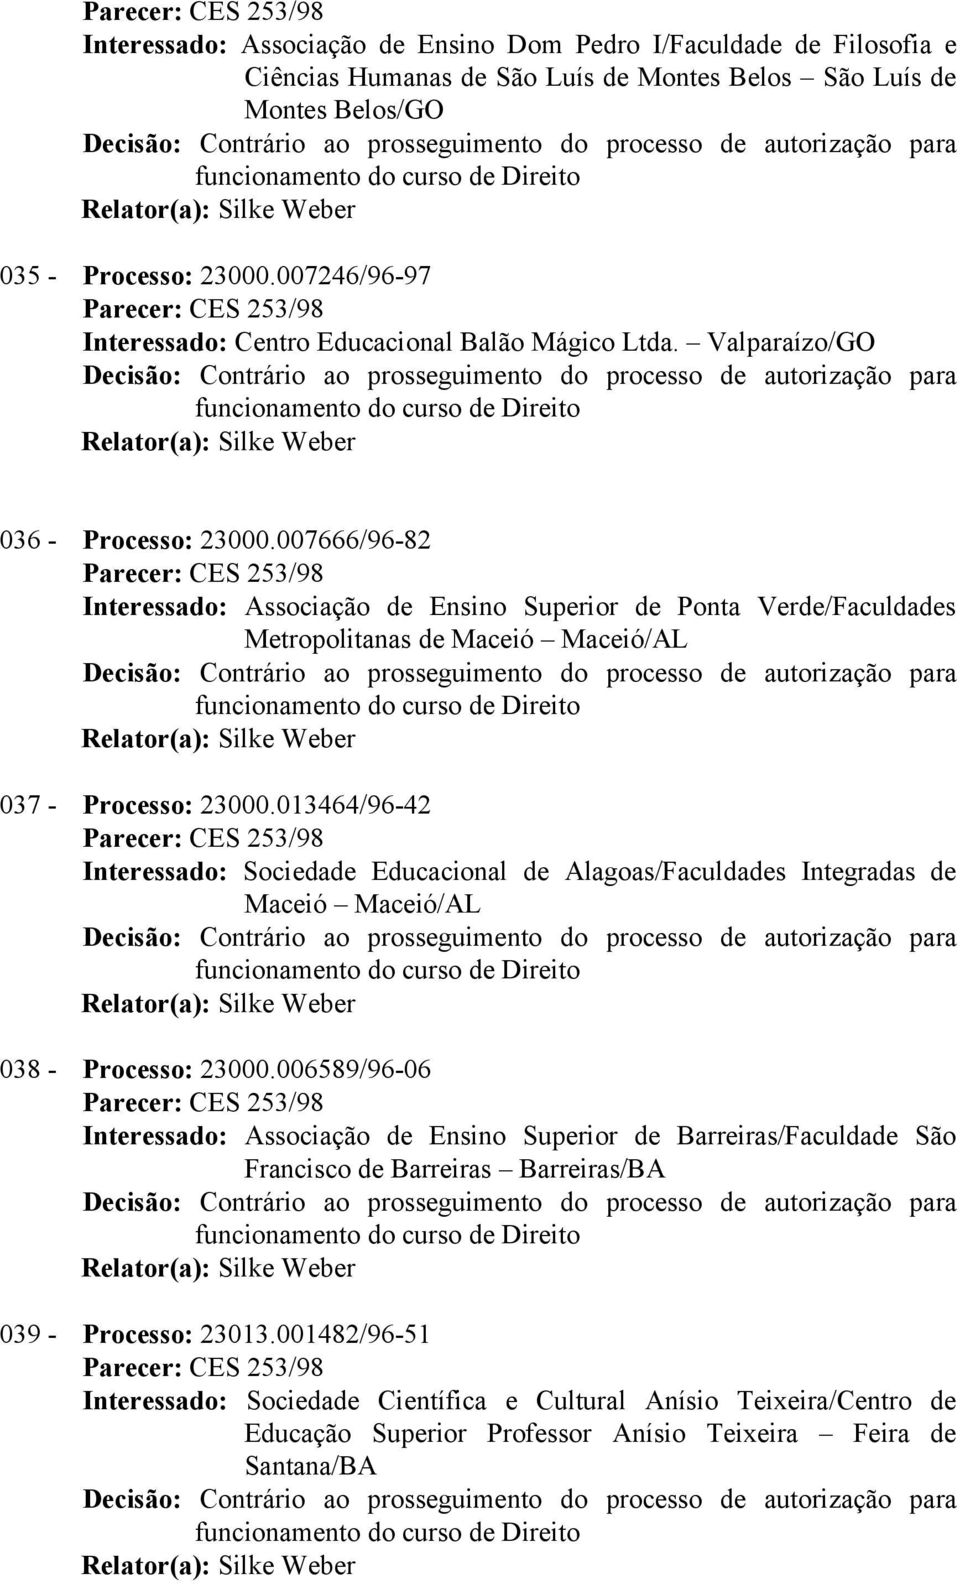 007666/96-82 Interessado: Associação de Ensino Superior de Ponta Verde/Faculdades Metropolitanas de Maceió Maceió/AL 037 - Processo: 23000.